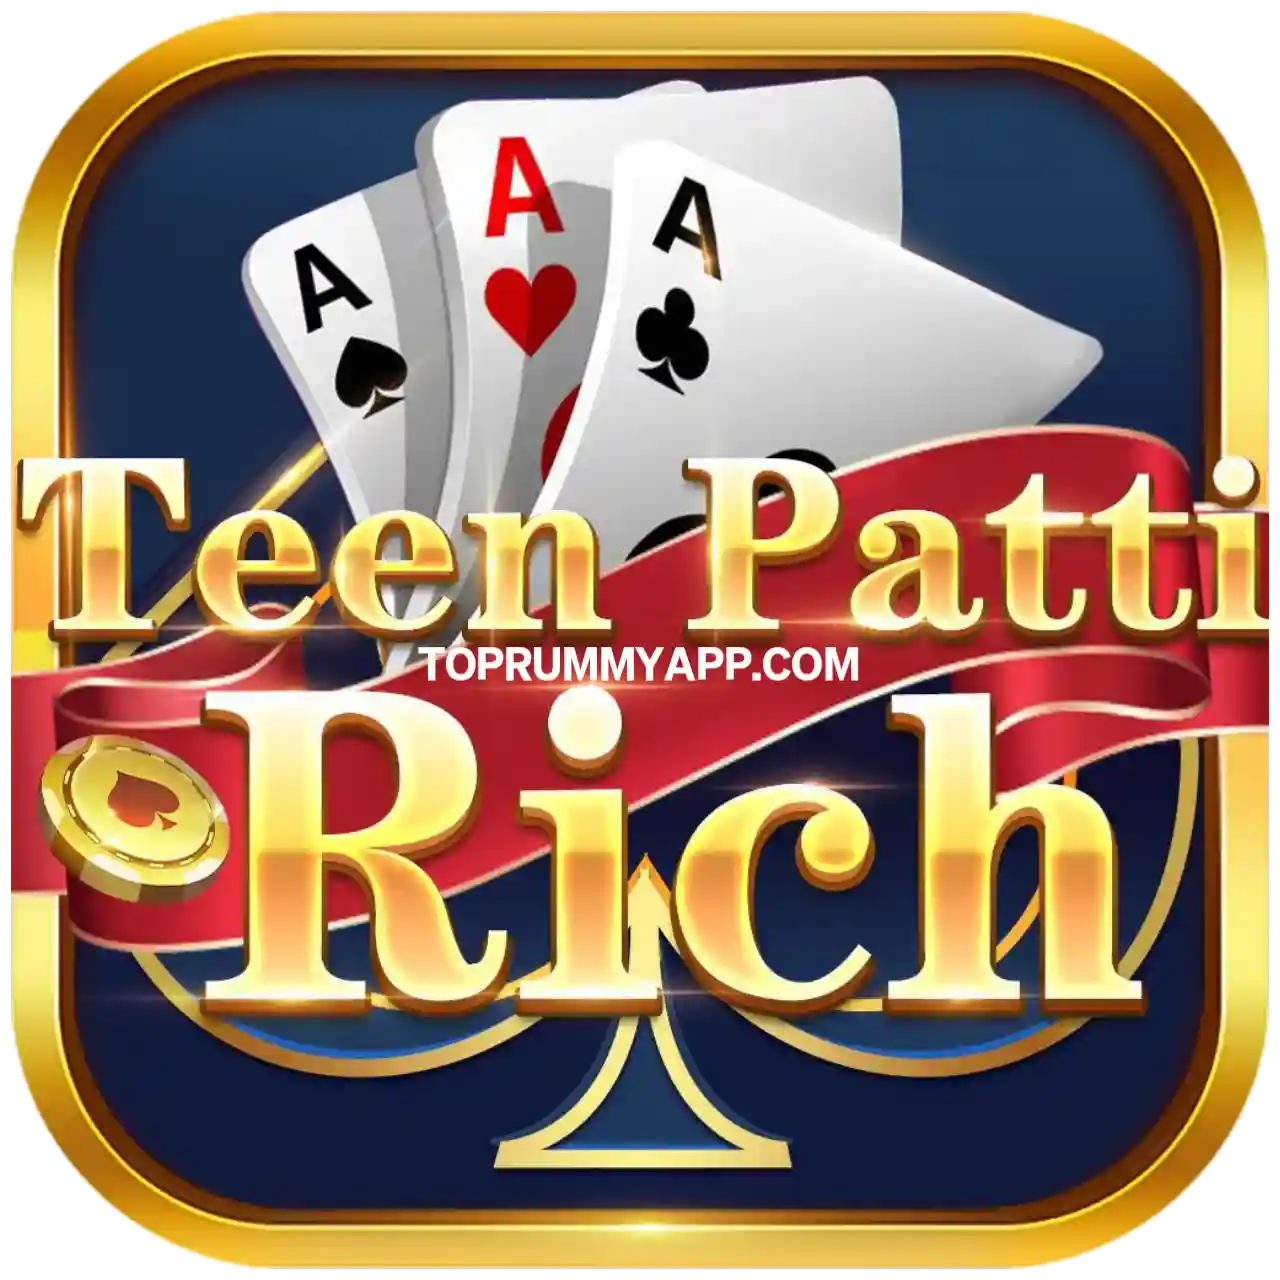 Teen Patti App Download All Teen Patti App List ₹41 Bonus